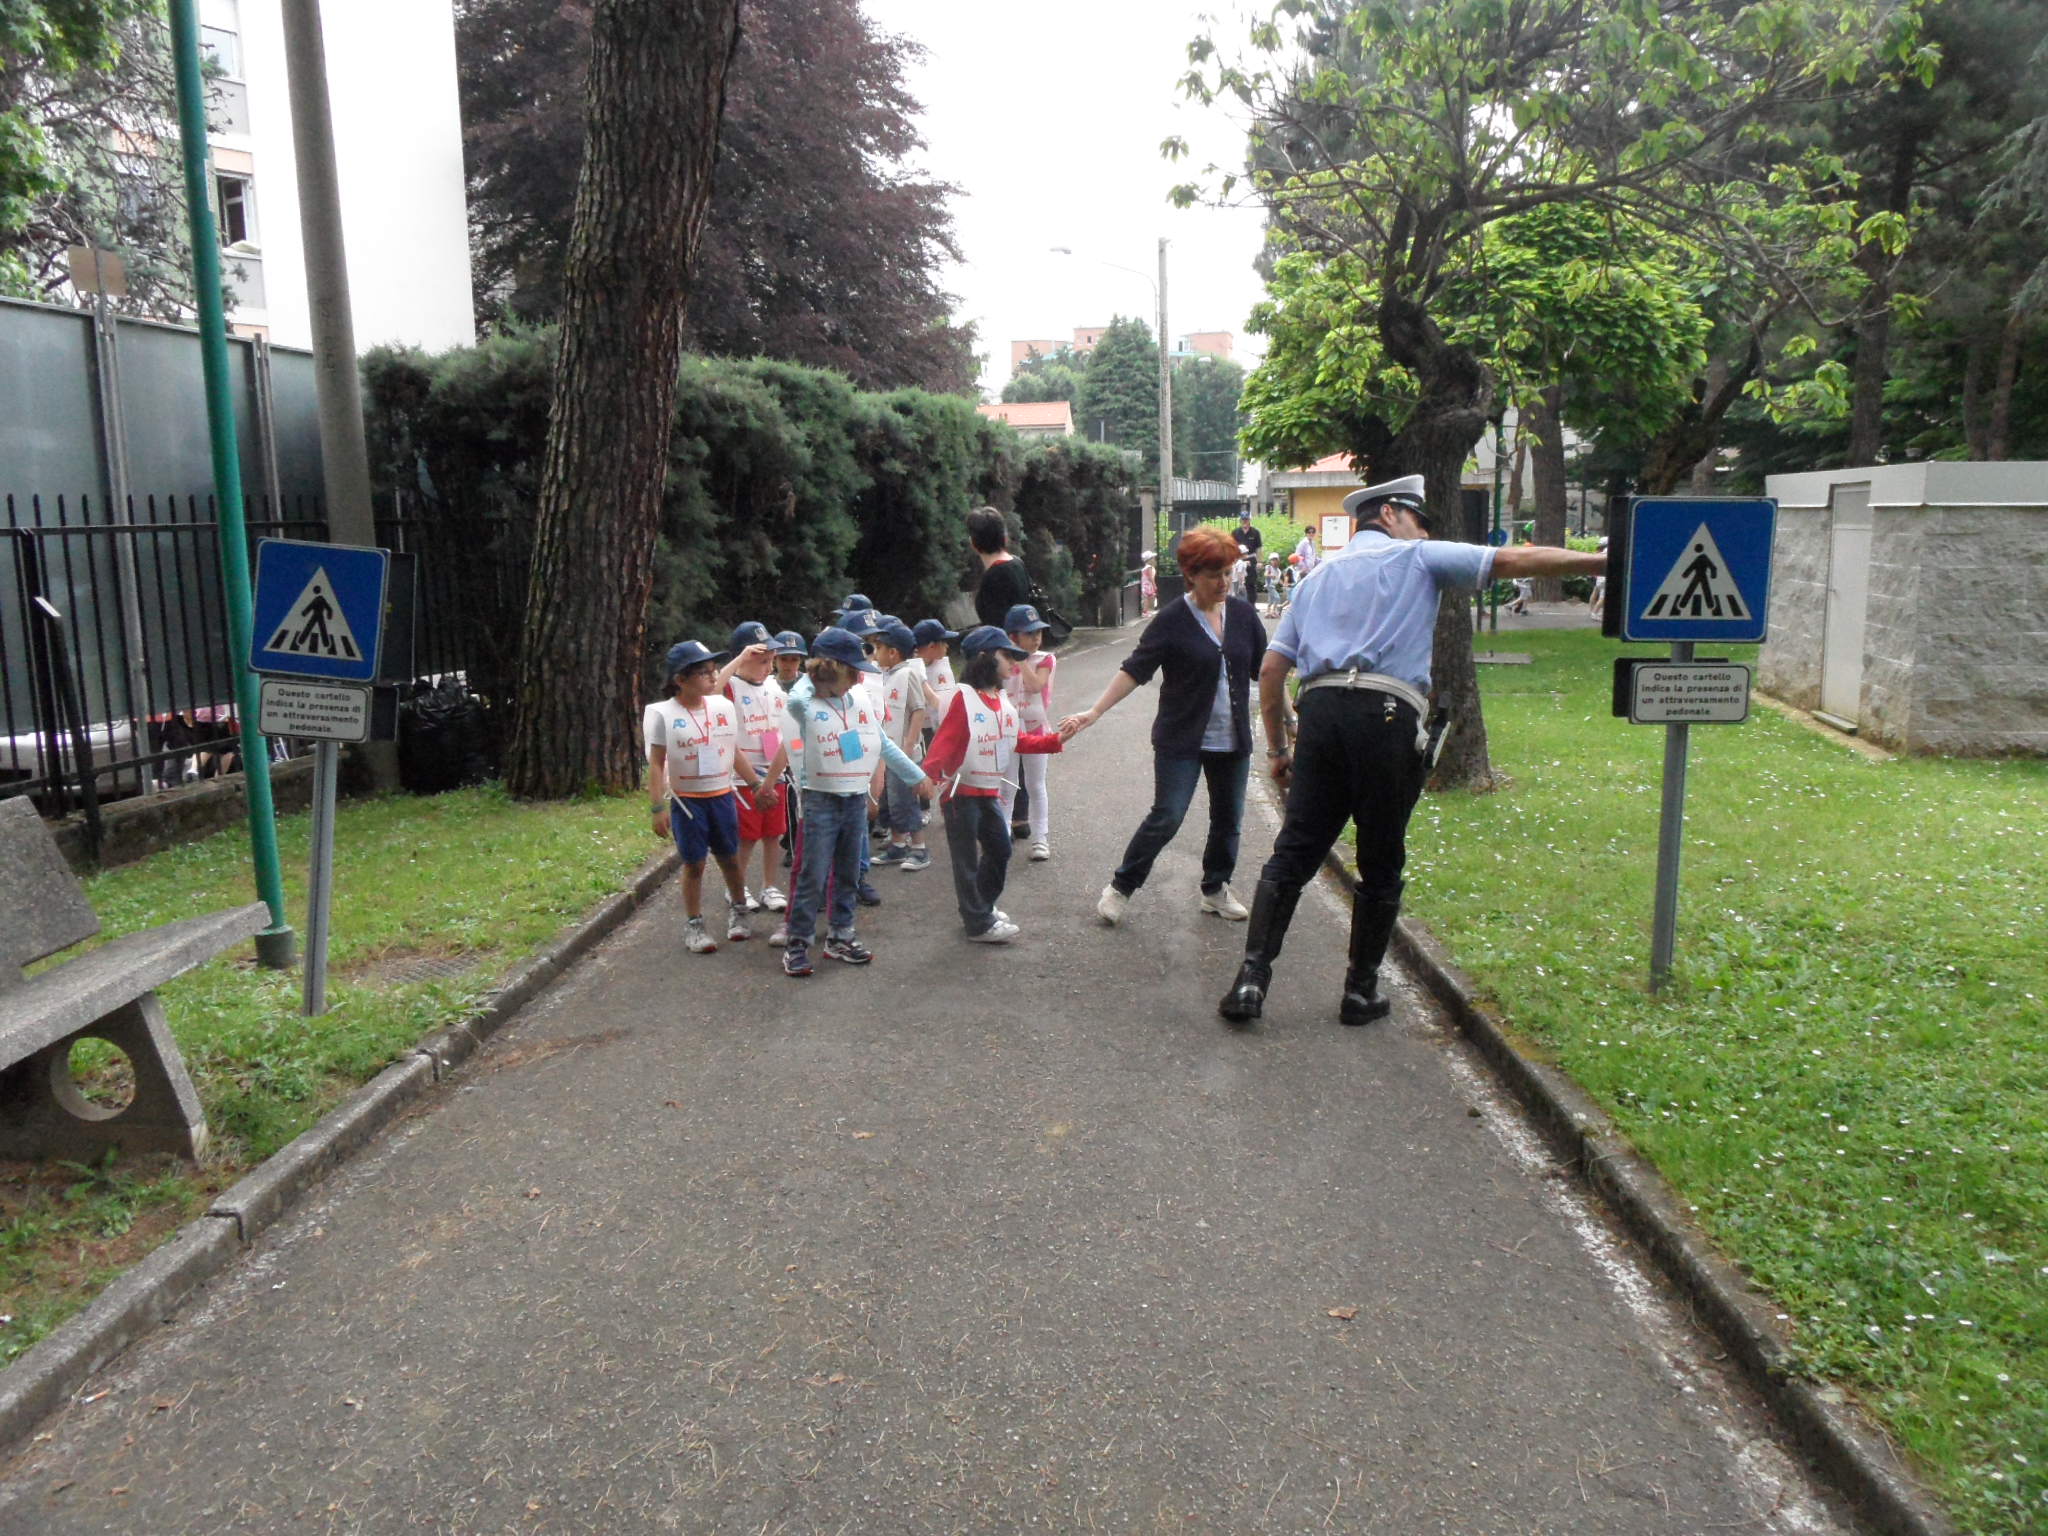 Bike week, oggi educazione stradale per i bimbi al parco “Carlo Porta”. Partecipazione gratuita